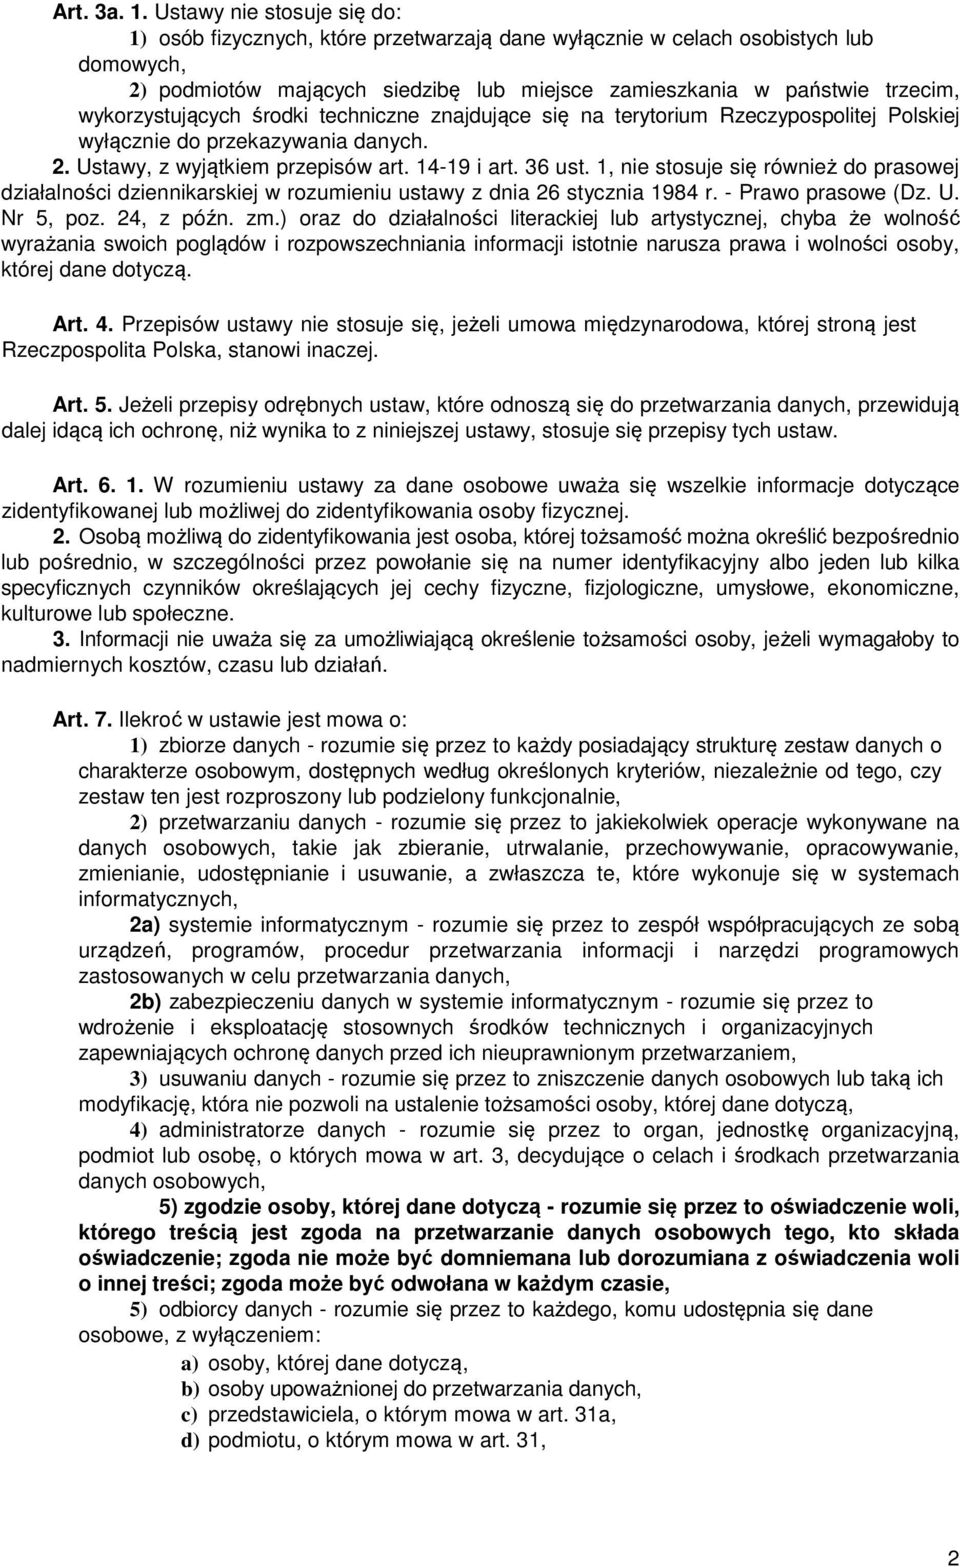 wykorzystujących środki techniczne znajdujące się na terytorium Rzeczypospolitej Polskiej wyłącznie do przekazywania danych. 2. Ustawy, z wyjątkiem przepisów art. 14-19 i art. 36 ust.